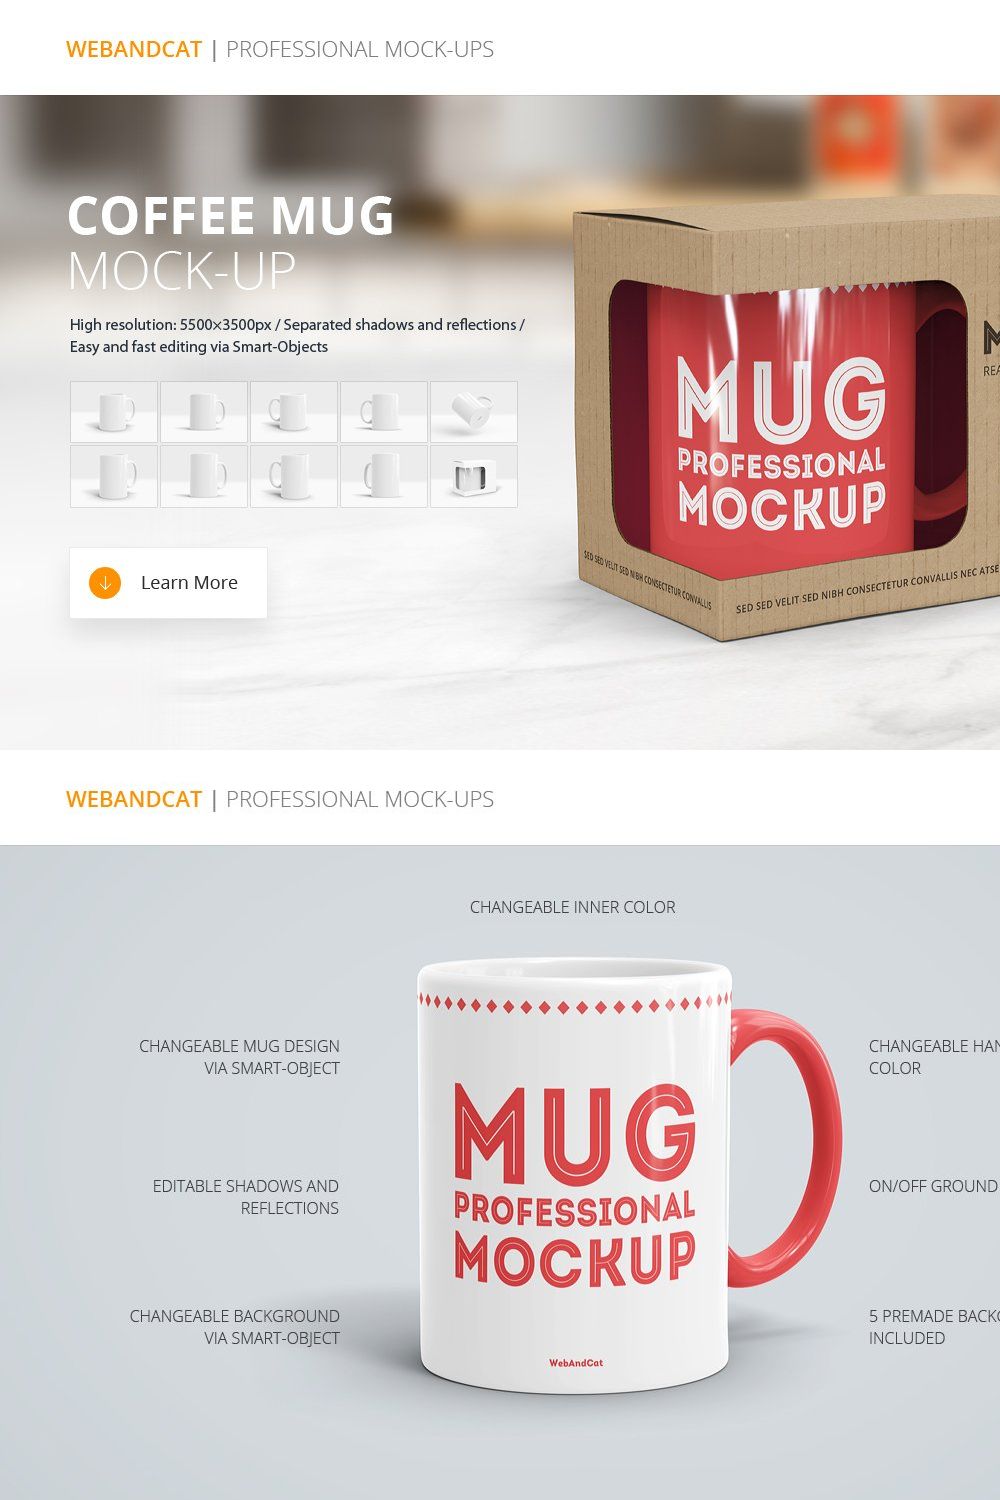 Coffee Mug Mockup pinterest preview image.